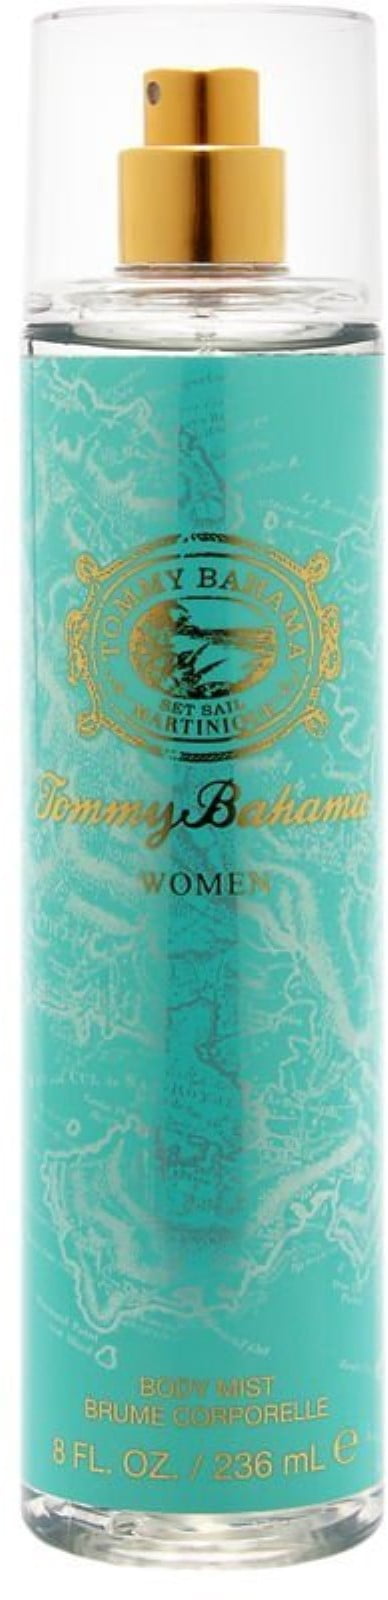 tommy bahama martinique body spray